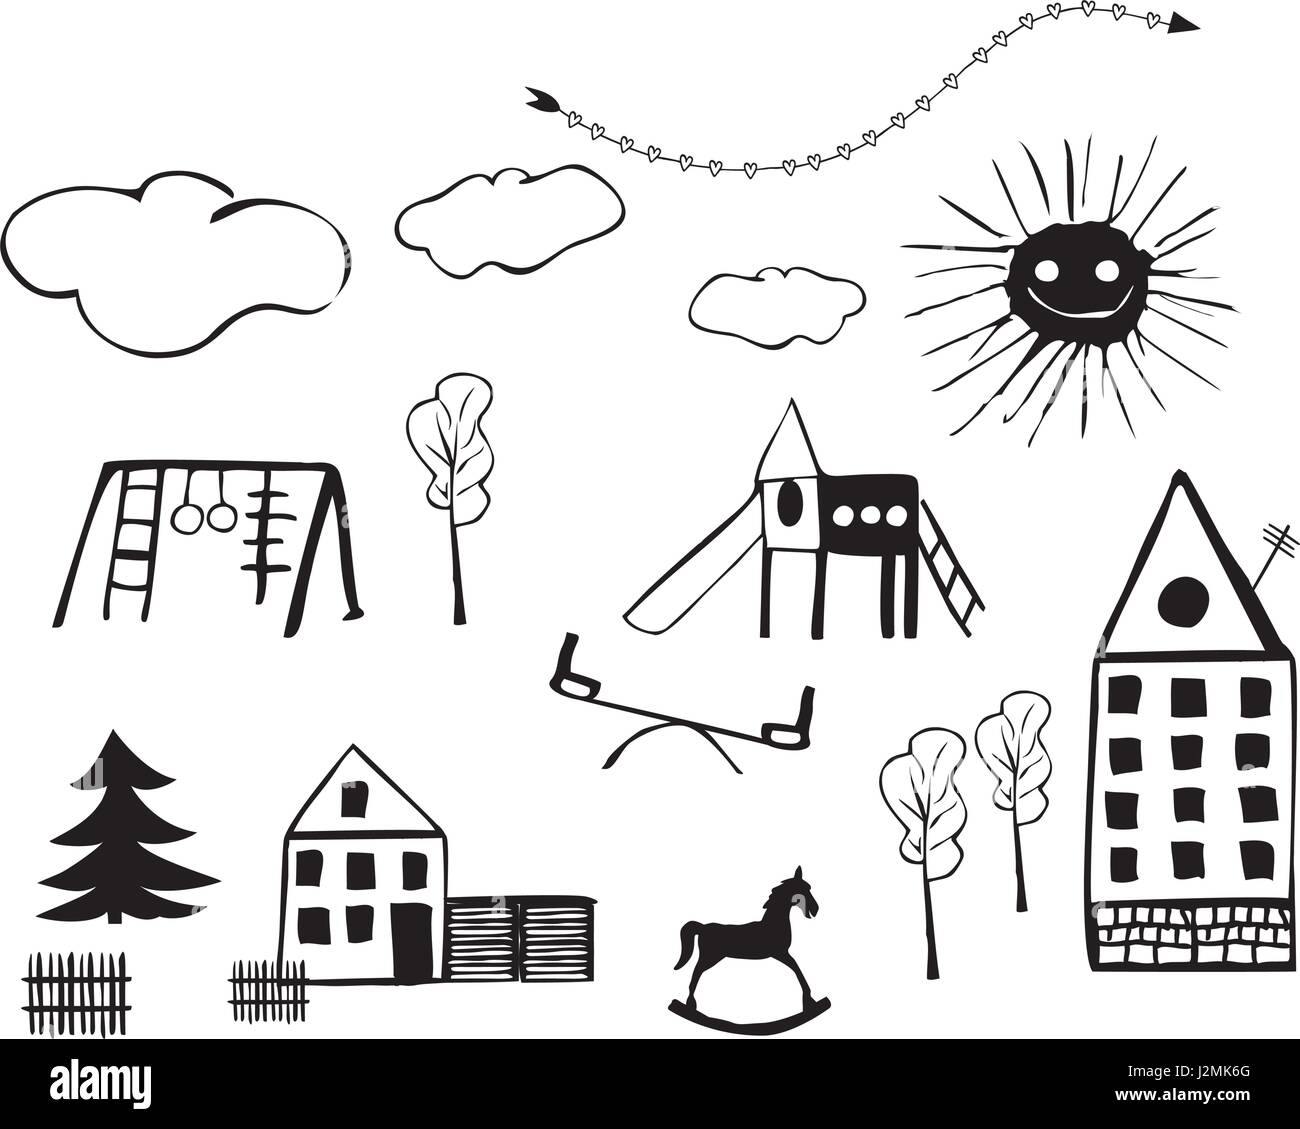 Bambini disegni di parchi gioco per bambini, case, gli alberi, le nuvole e giocattoli Illustrazione Vettoriale